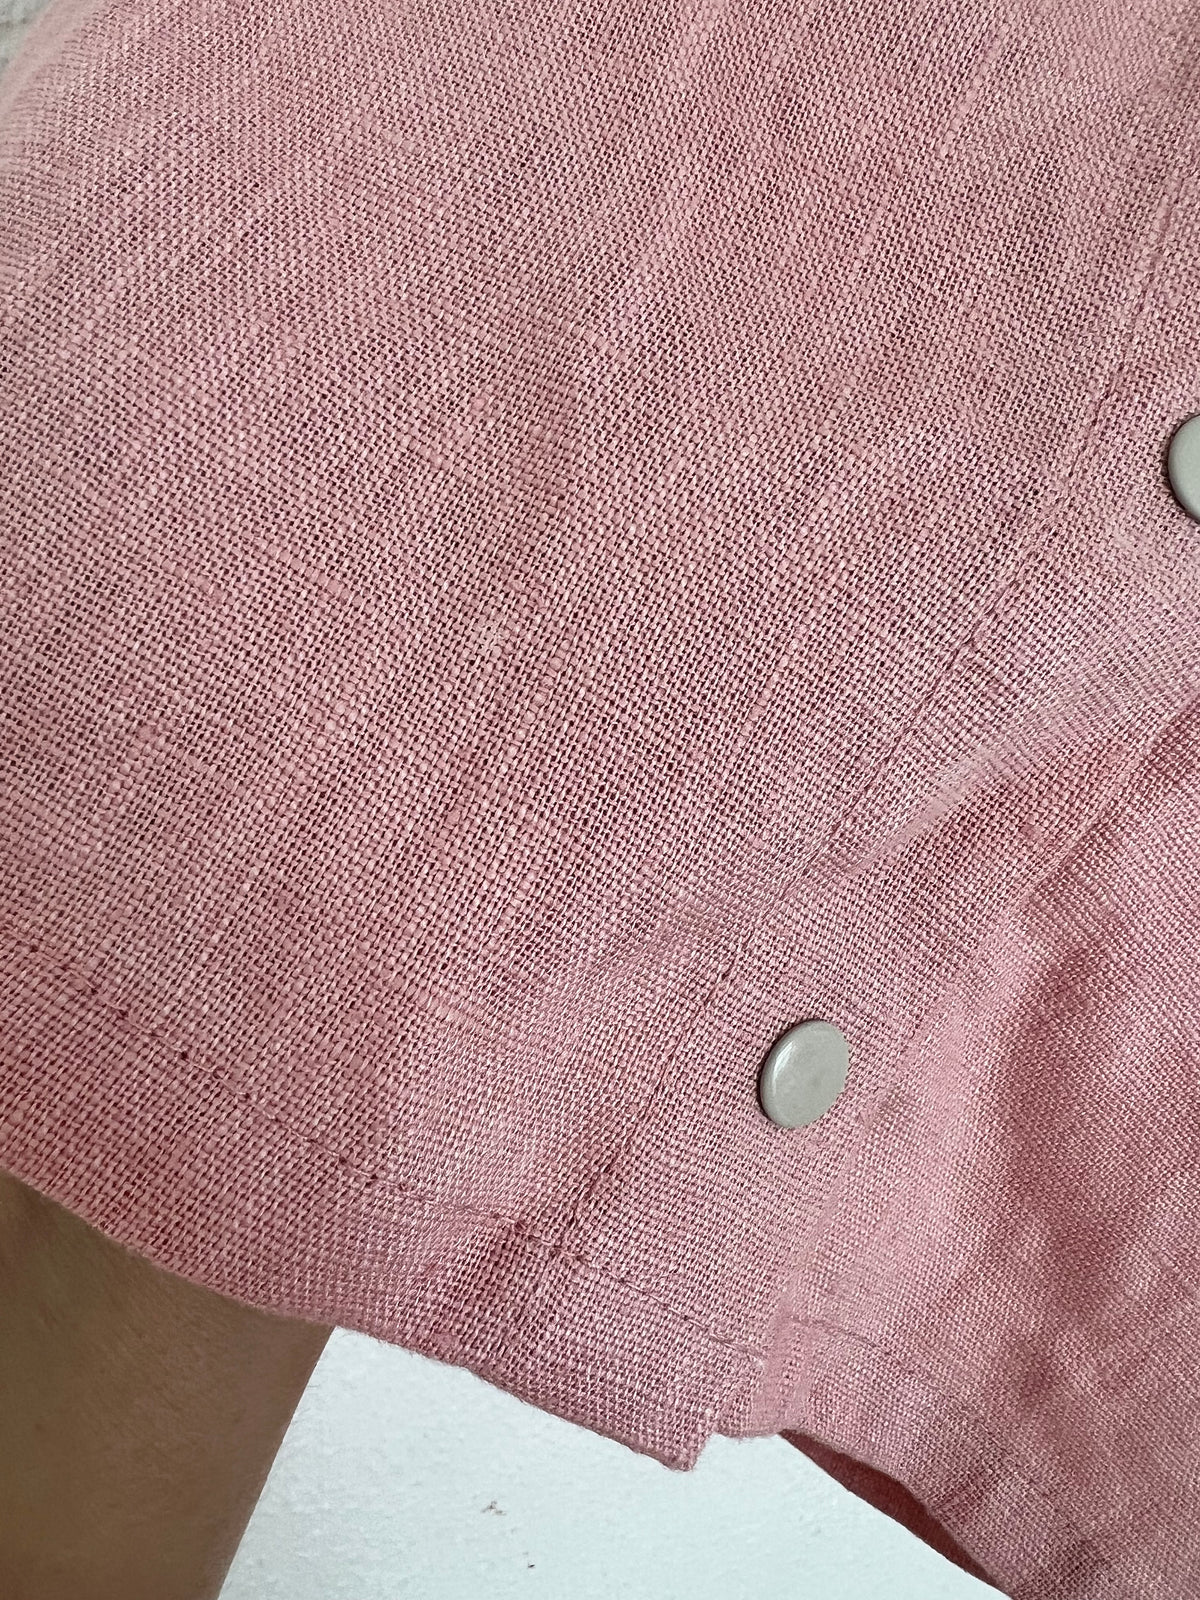 Linen singlet pink 3-6 months (seconds)